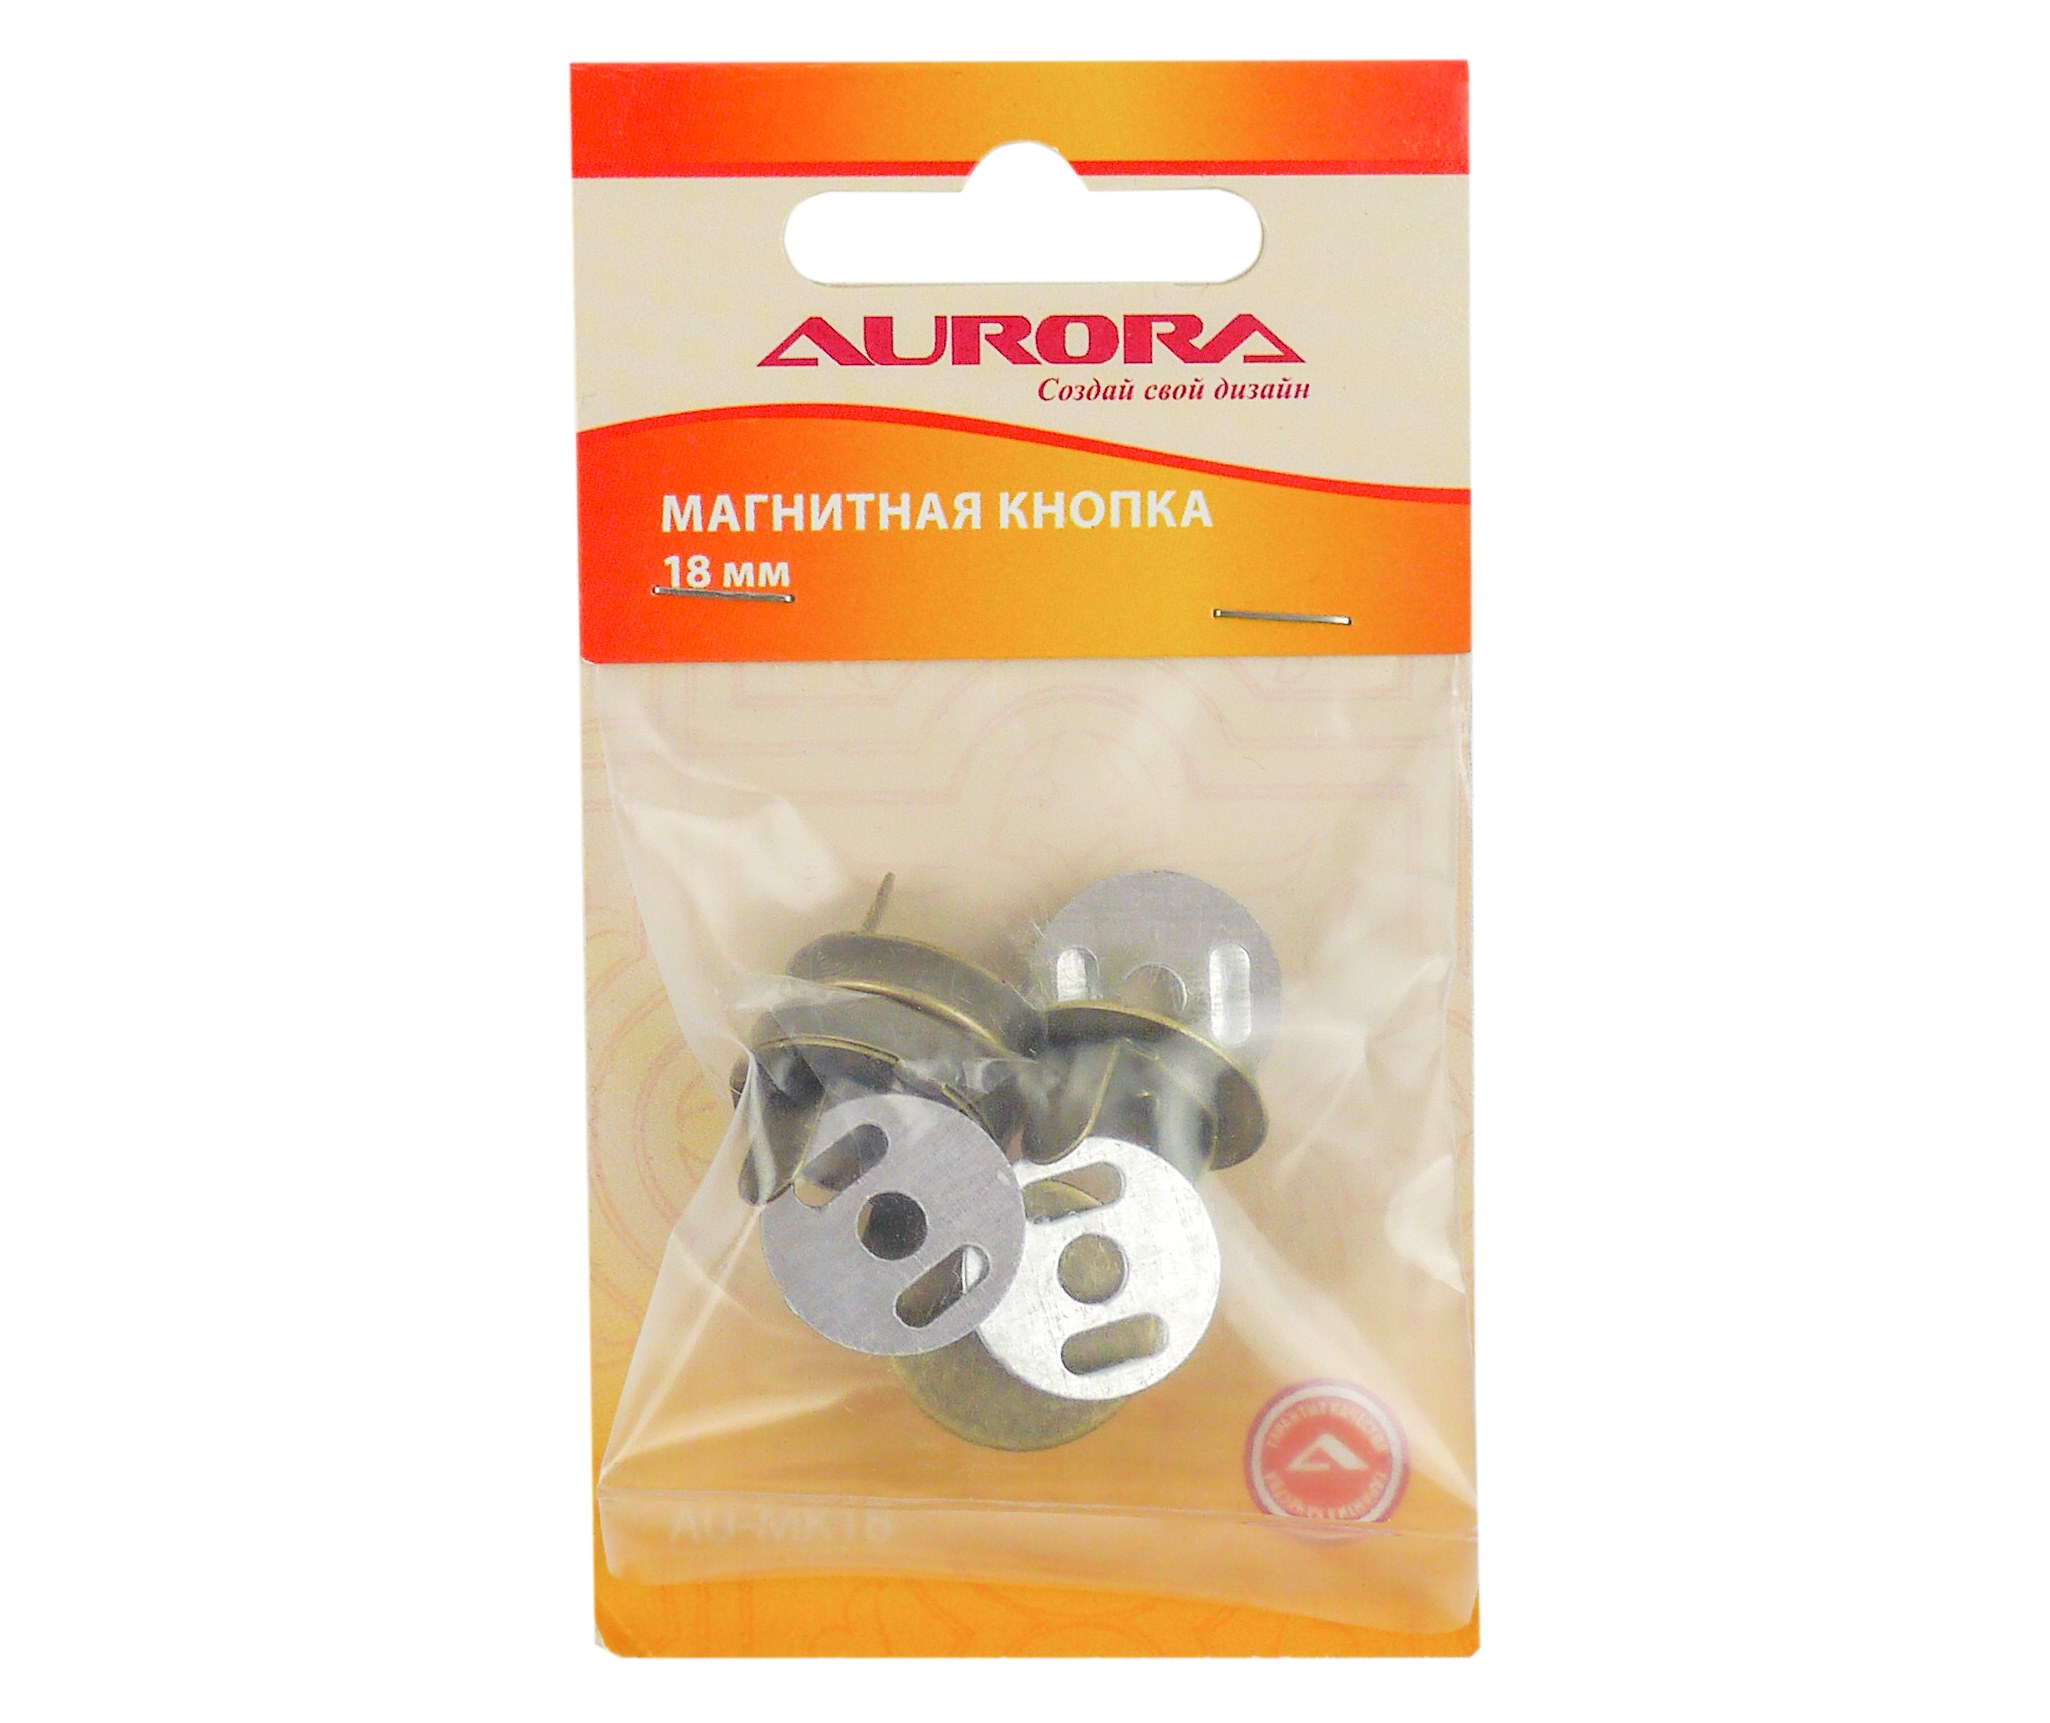 Кнопки на прокол Aurora AU-MK18 магнитные 18 мм медный